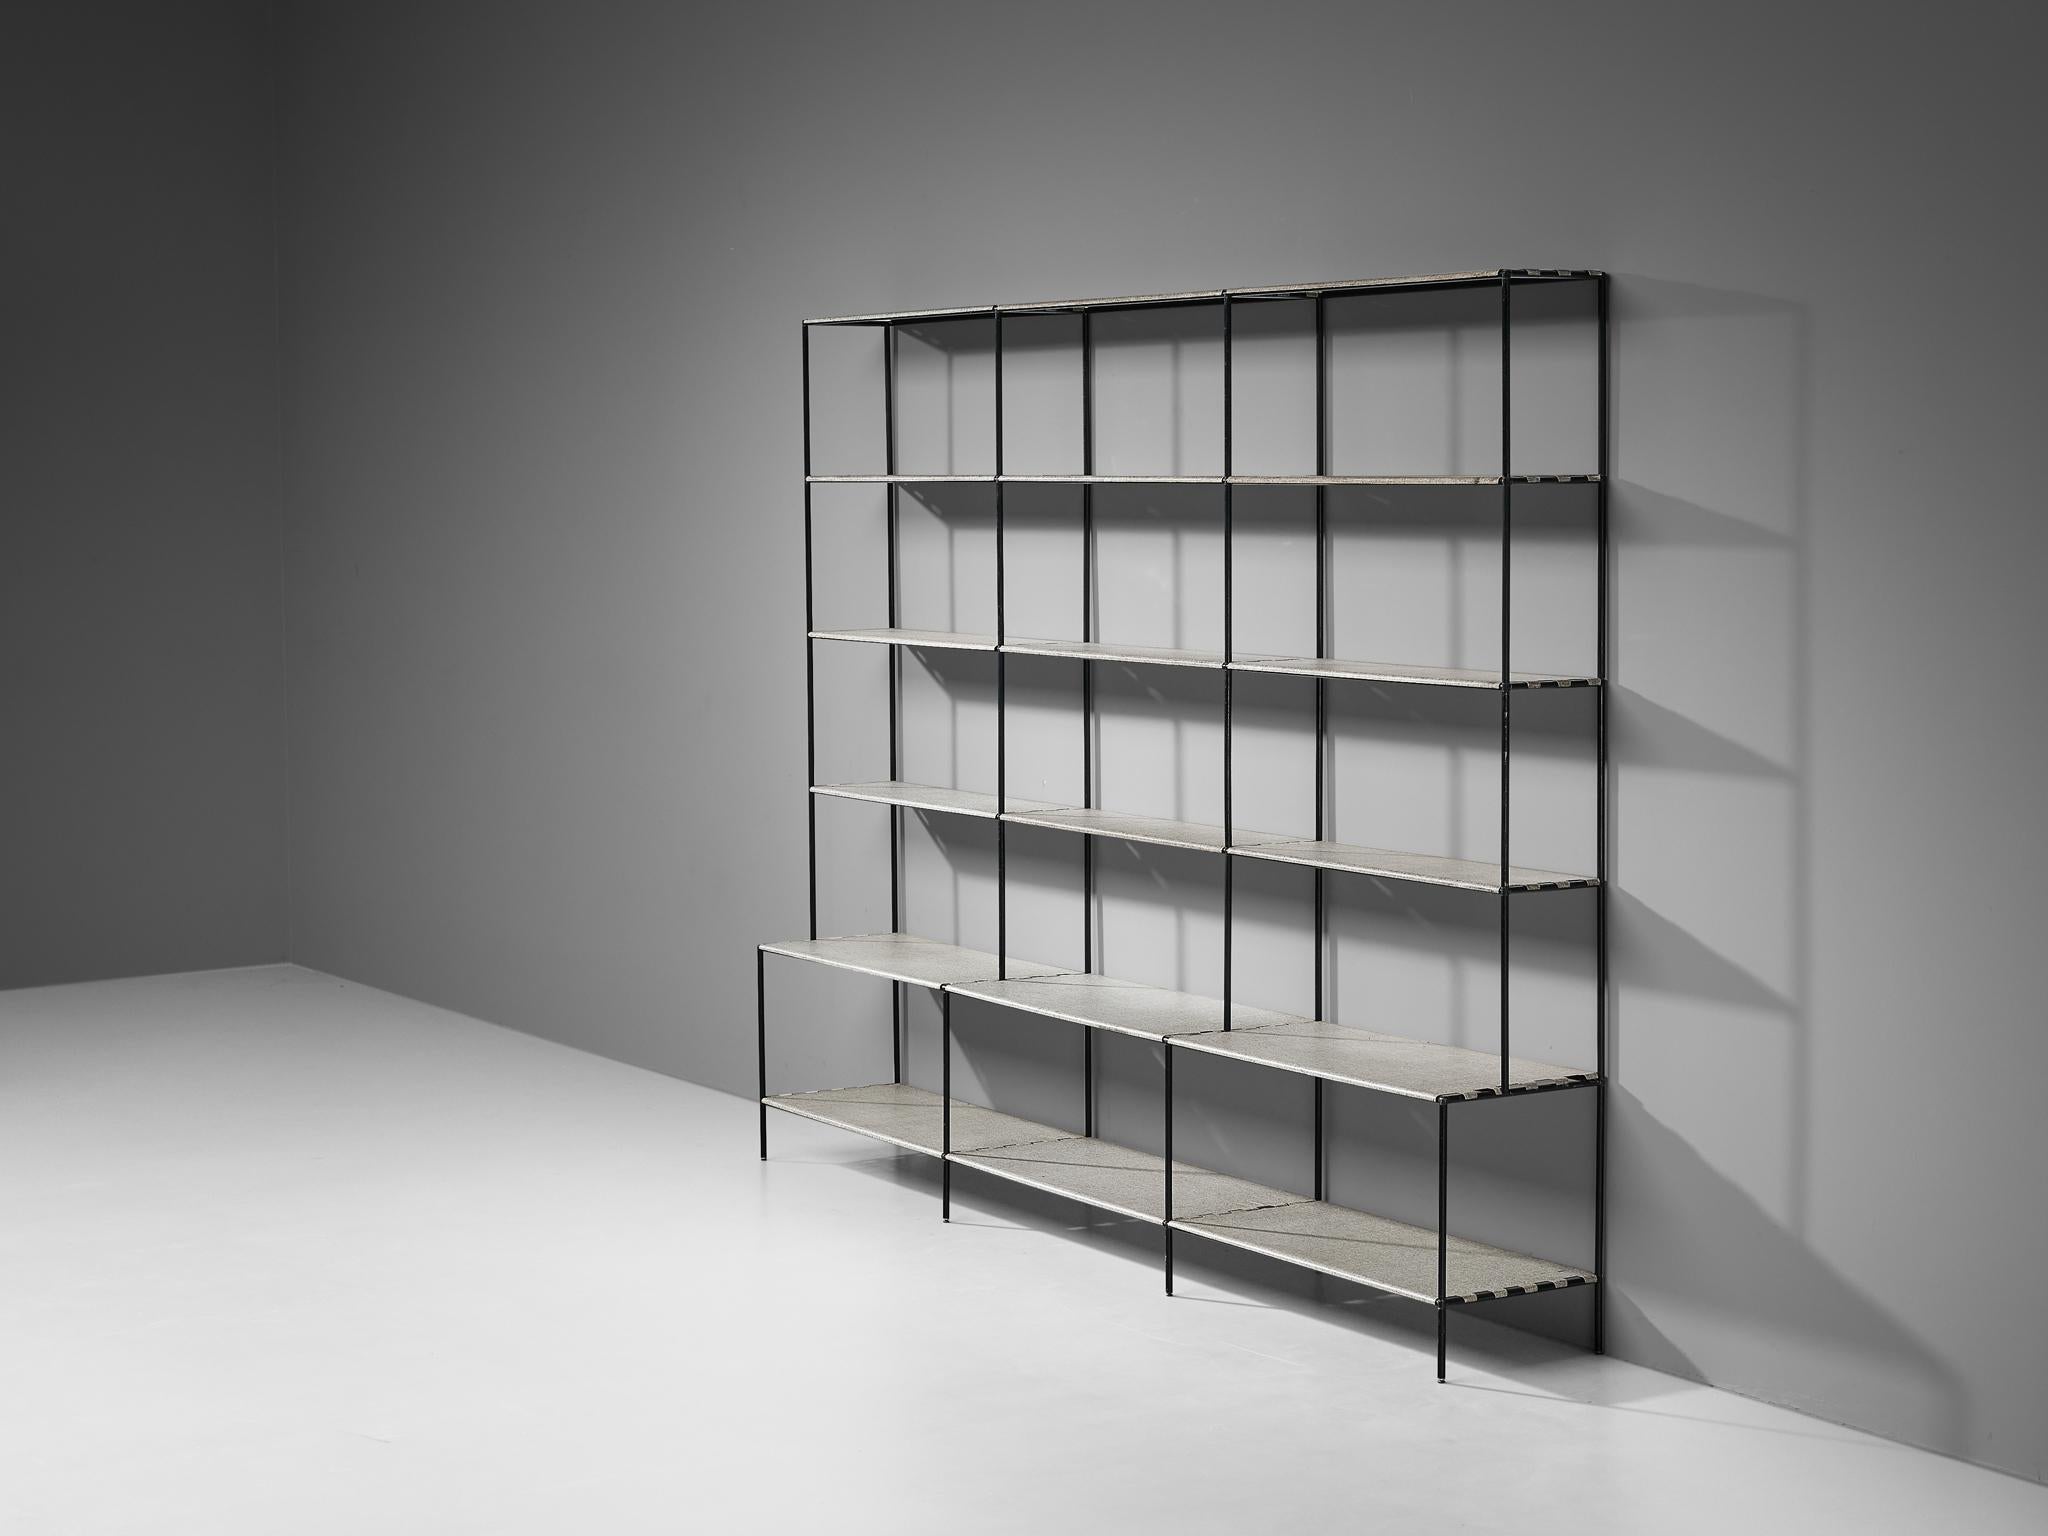 Poul Cadovius, offenes Bücherregal oder Raumteiler, Metall, Dänemark, 1960er Jahre

Dieses geräumige und minimalistische Regal wurde von Poul Cadovius entworfen. Dieses Regalsystem besteht aus einem dünnen Rahmen aus schwarzem Metall, an dem